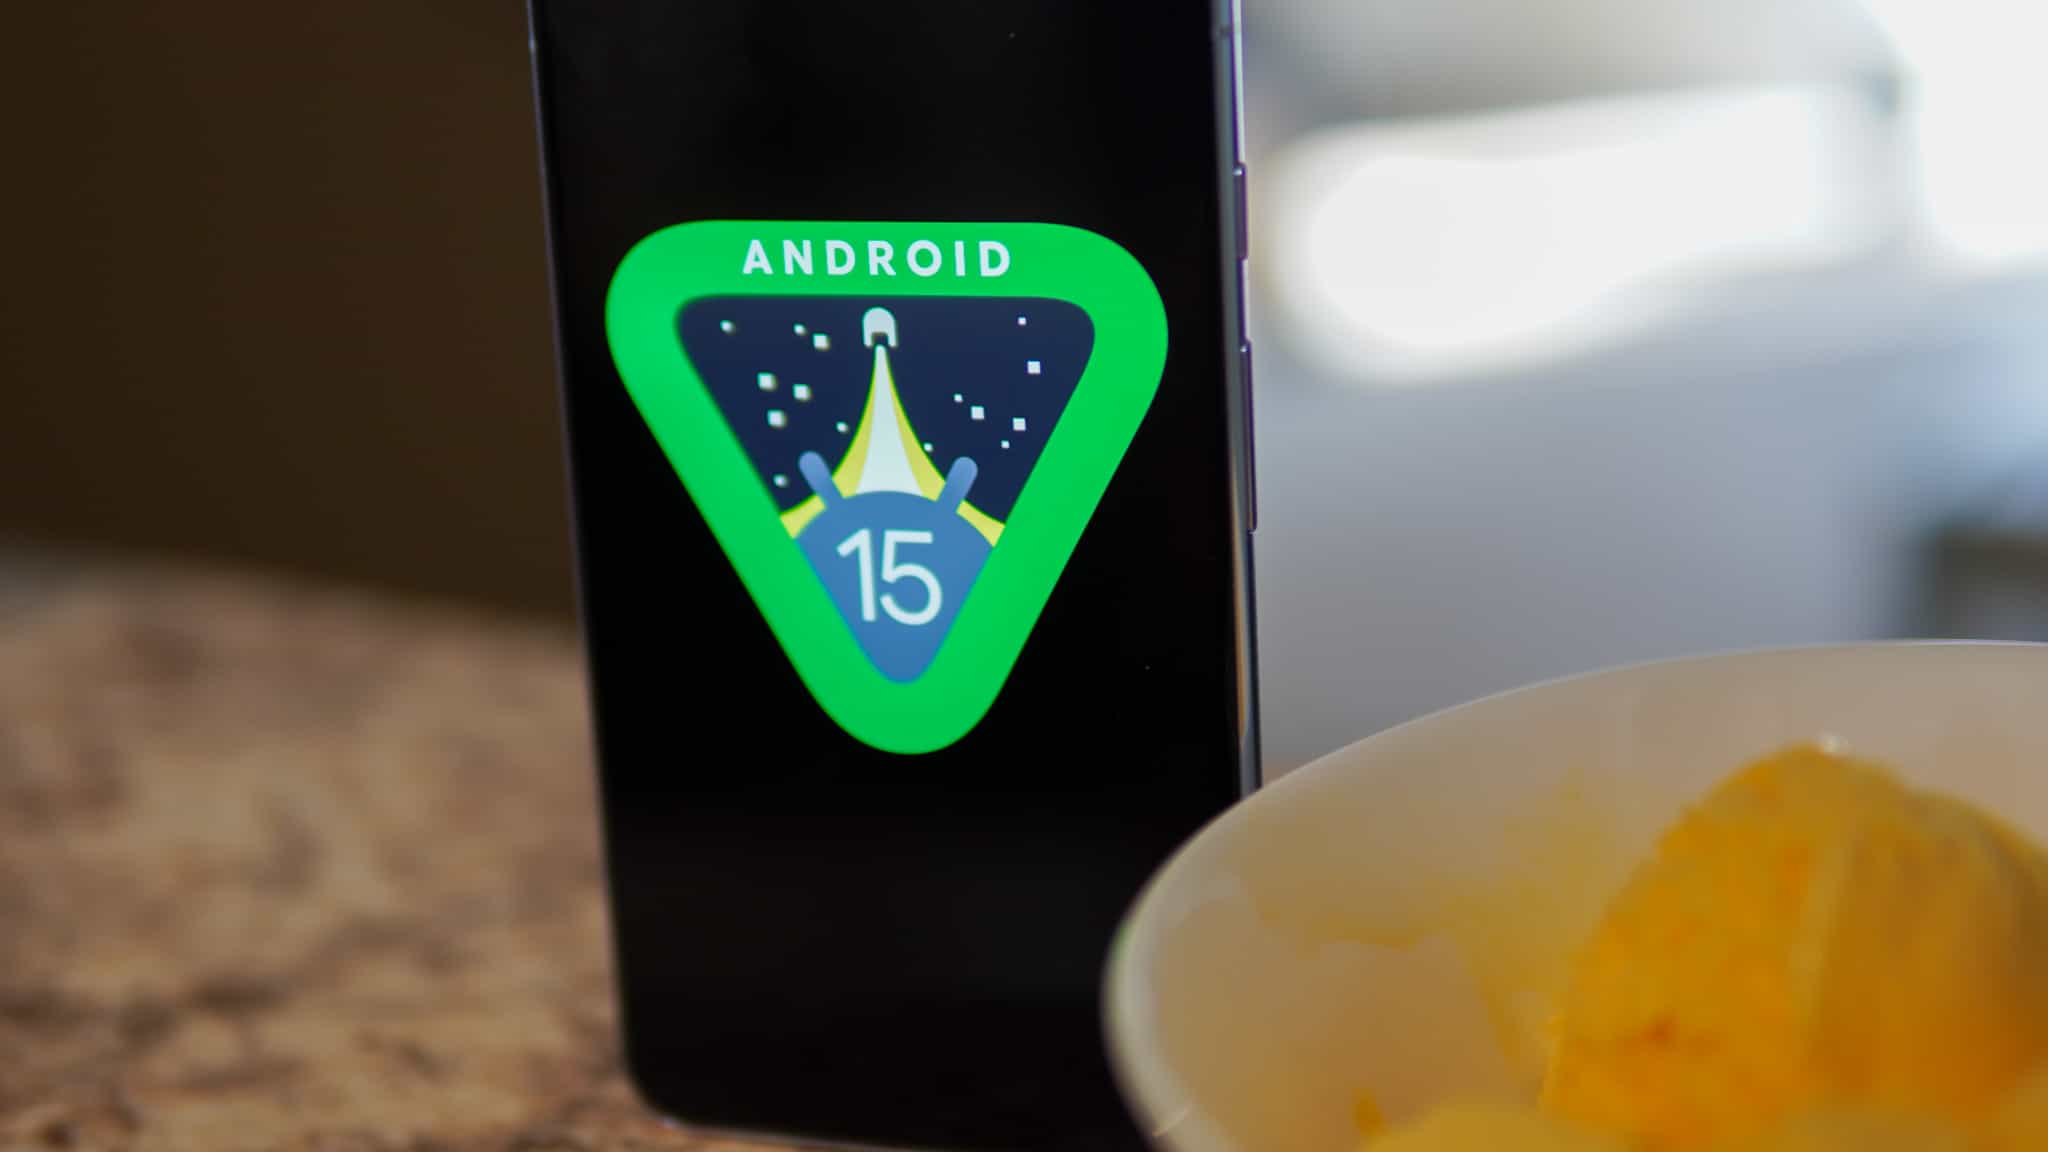 Google lanza Android 15 Beta 2.1 con solución de espacio privado